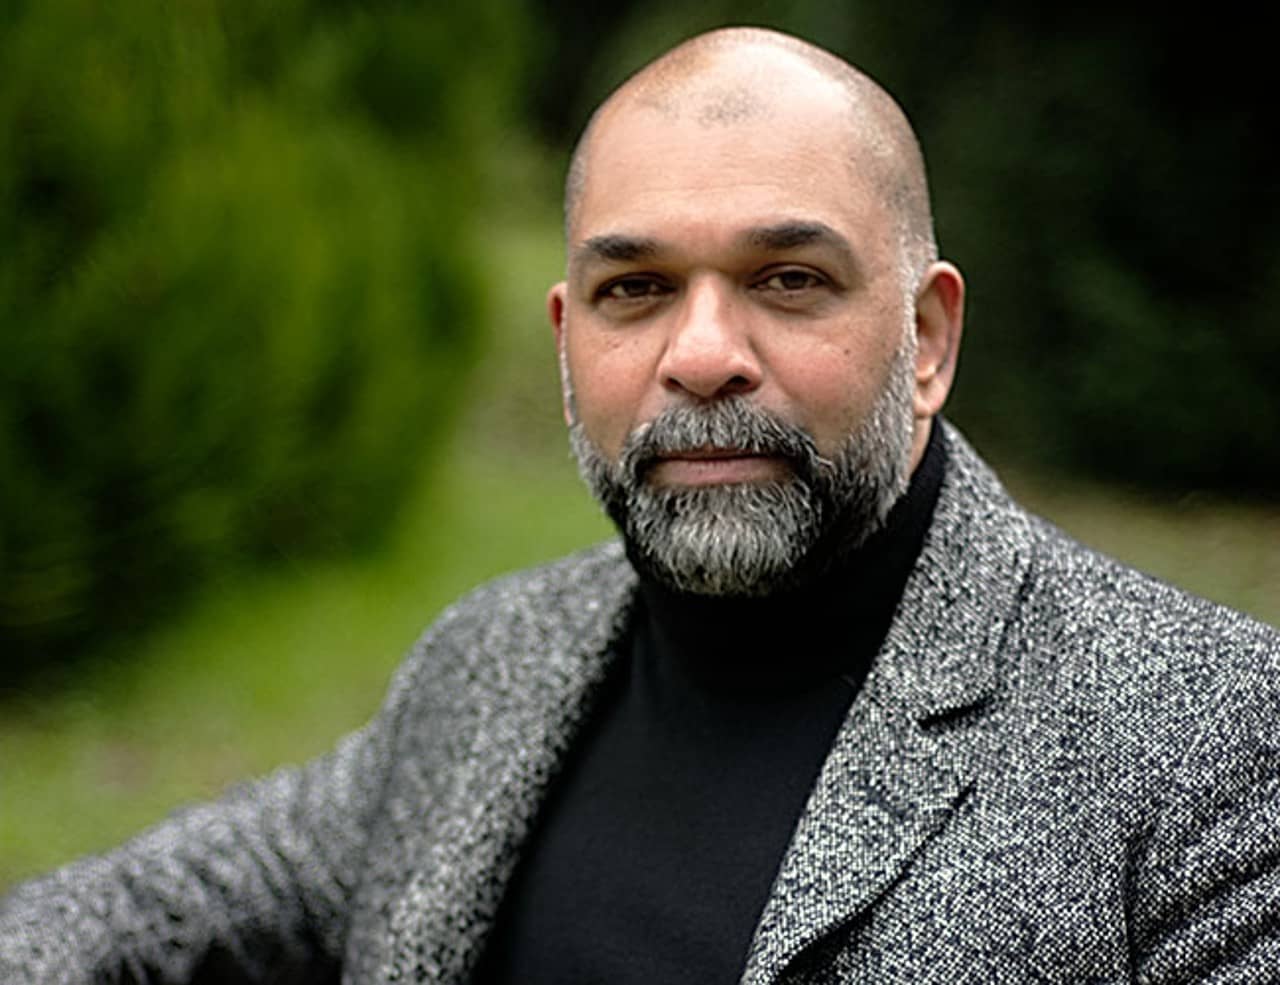 Eine Portraitfotografie des Autors Sunil Mann. Der Hintergrund ist grasgrün und verschwommen. Der Autor ist glatzköpfig, trägt einen grauen Bart und einen grauen Blazer.